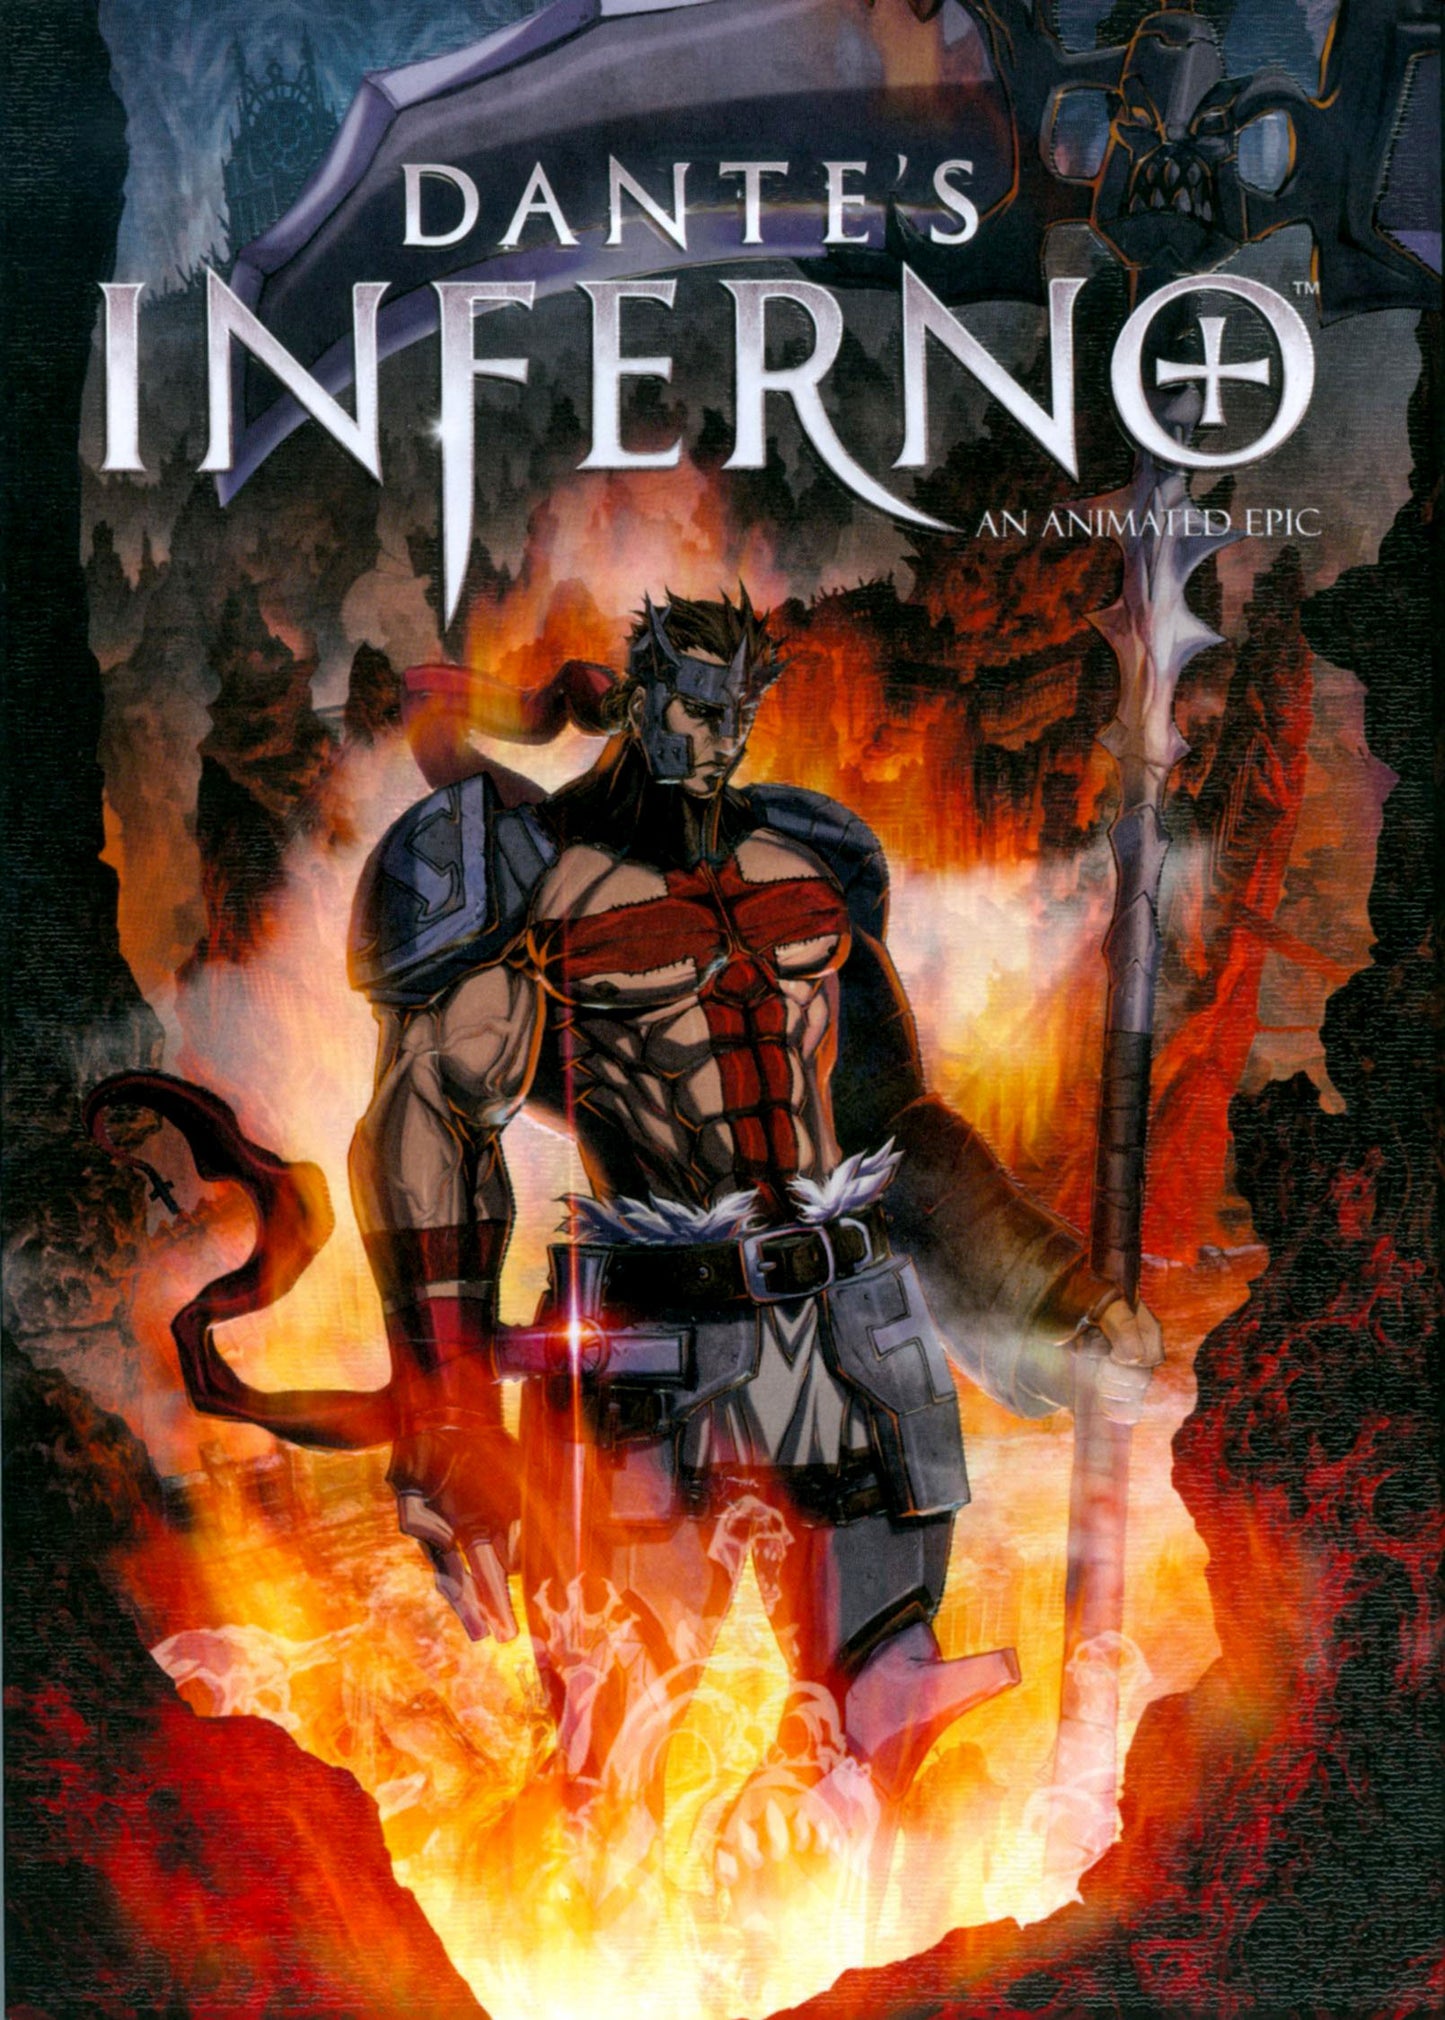 Dante's Inferno cover art